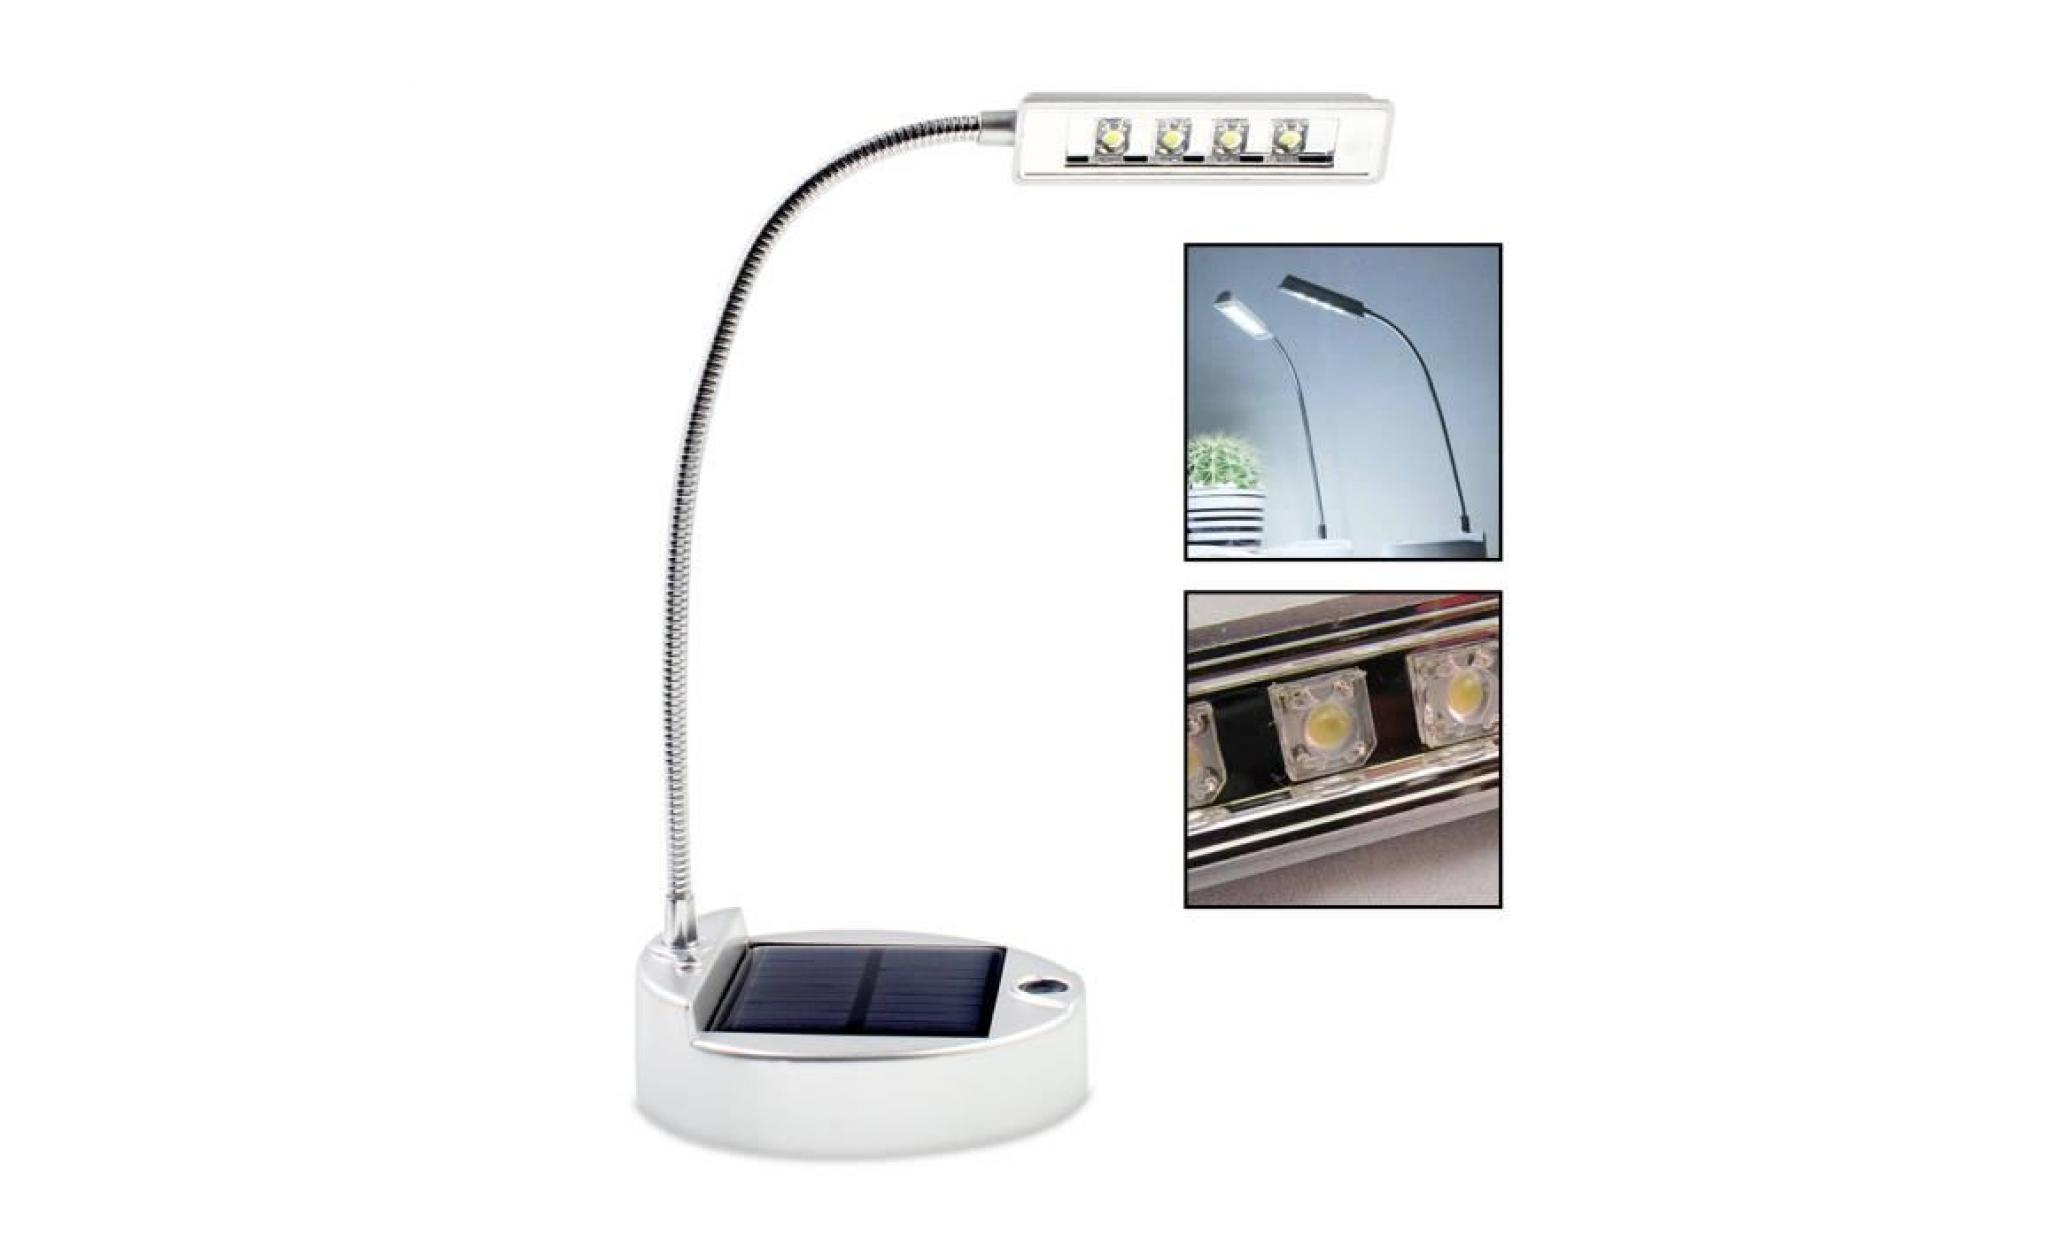 elinkume lampe de bureau 4 led solaire pliable usb rechargeable lampe de table lampe de chevet lecture led portable pas cher